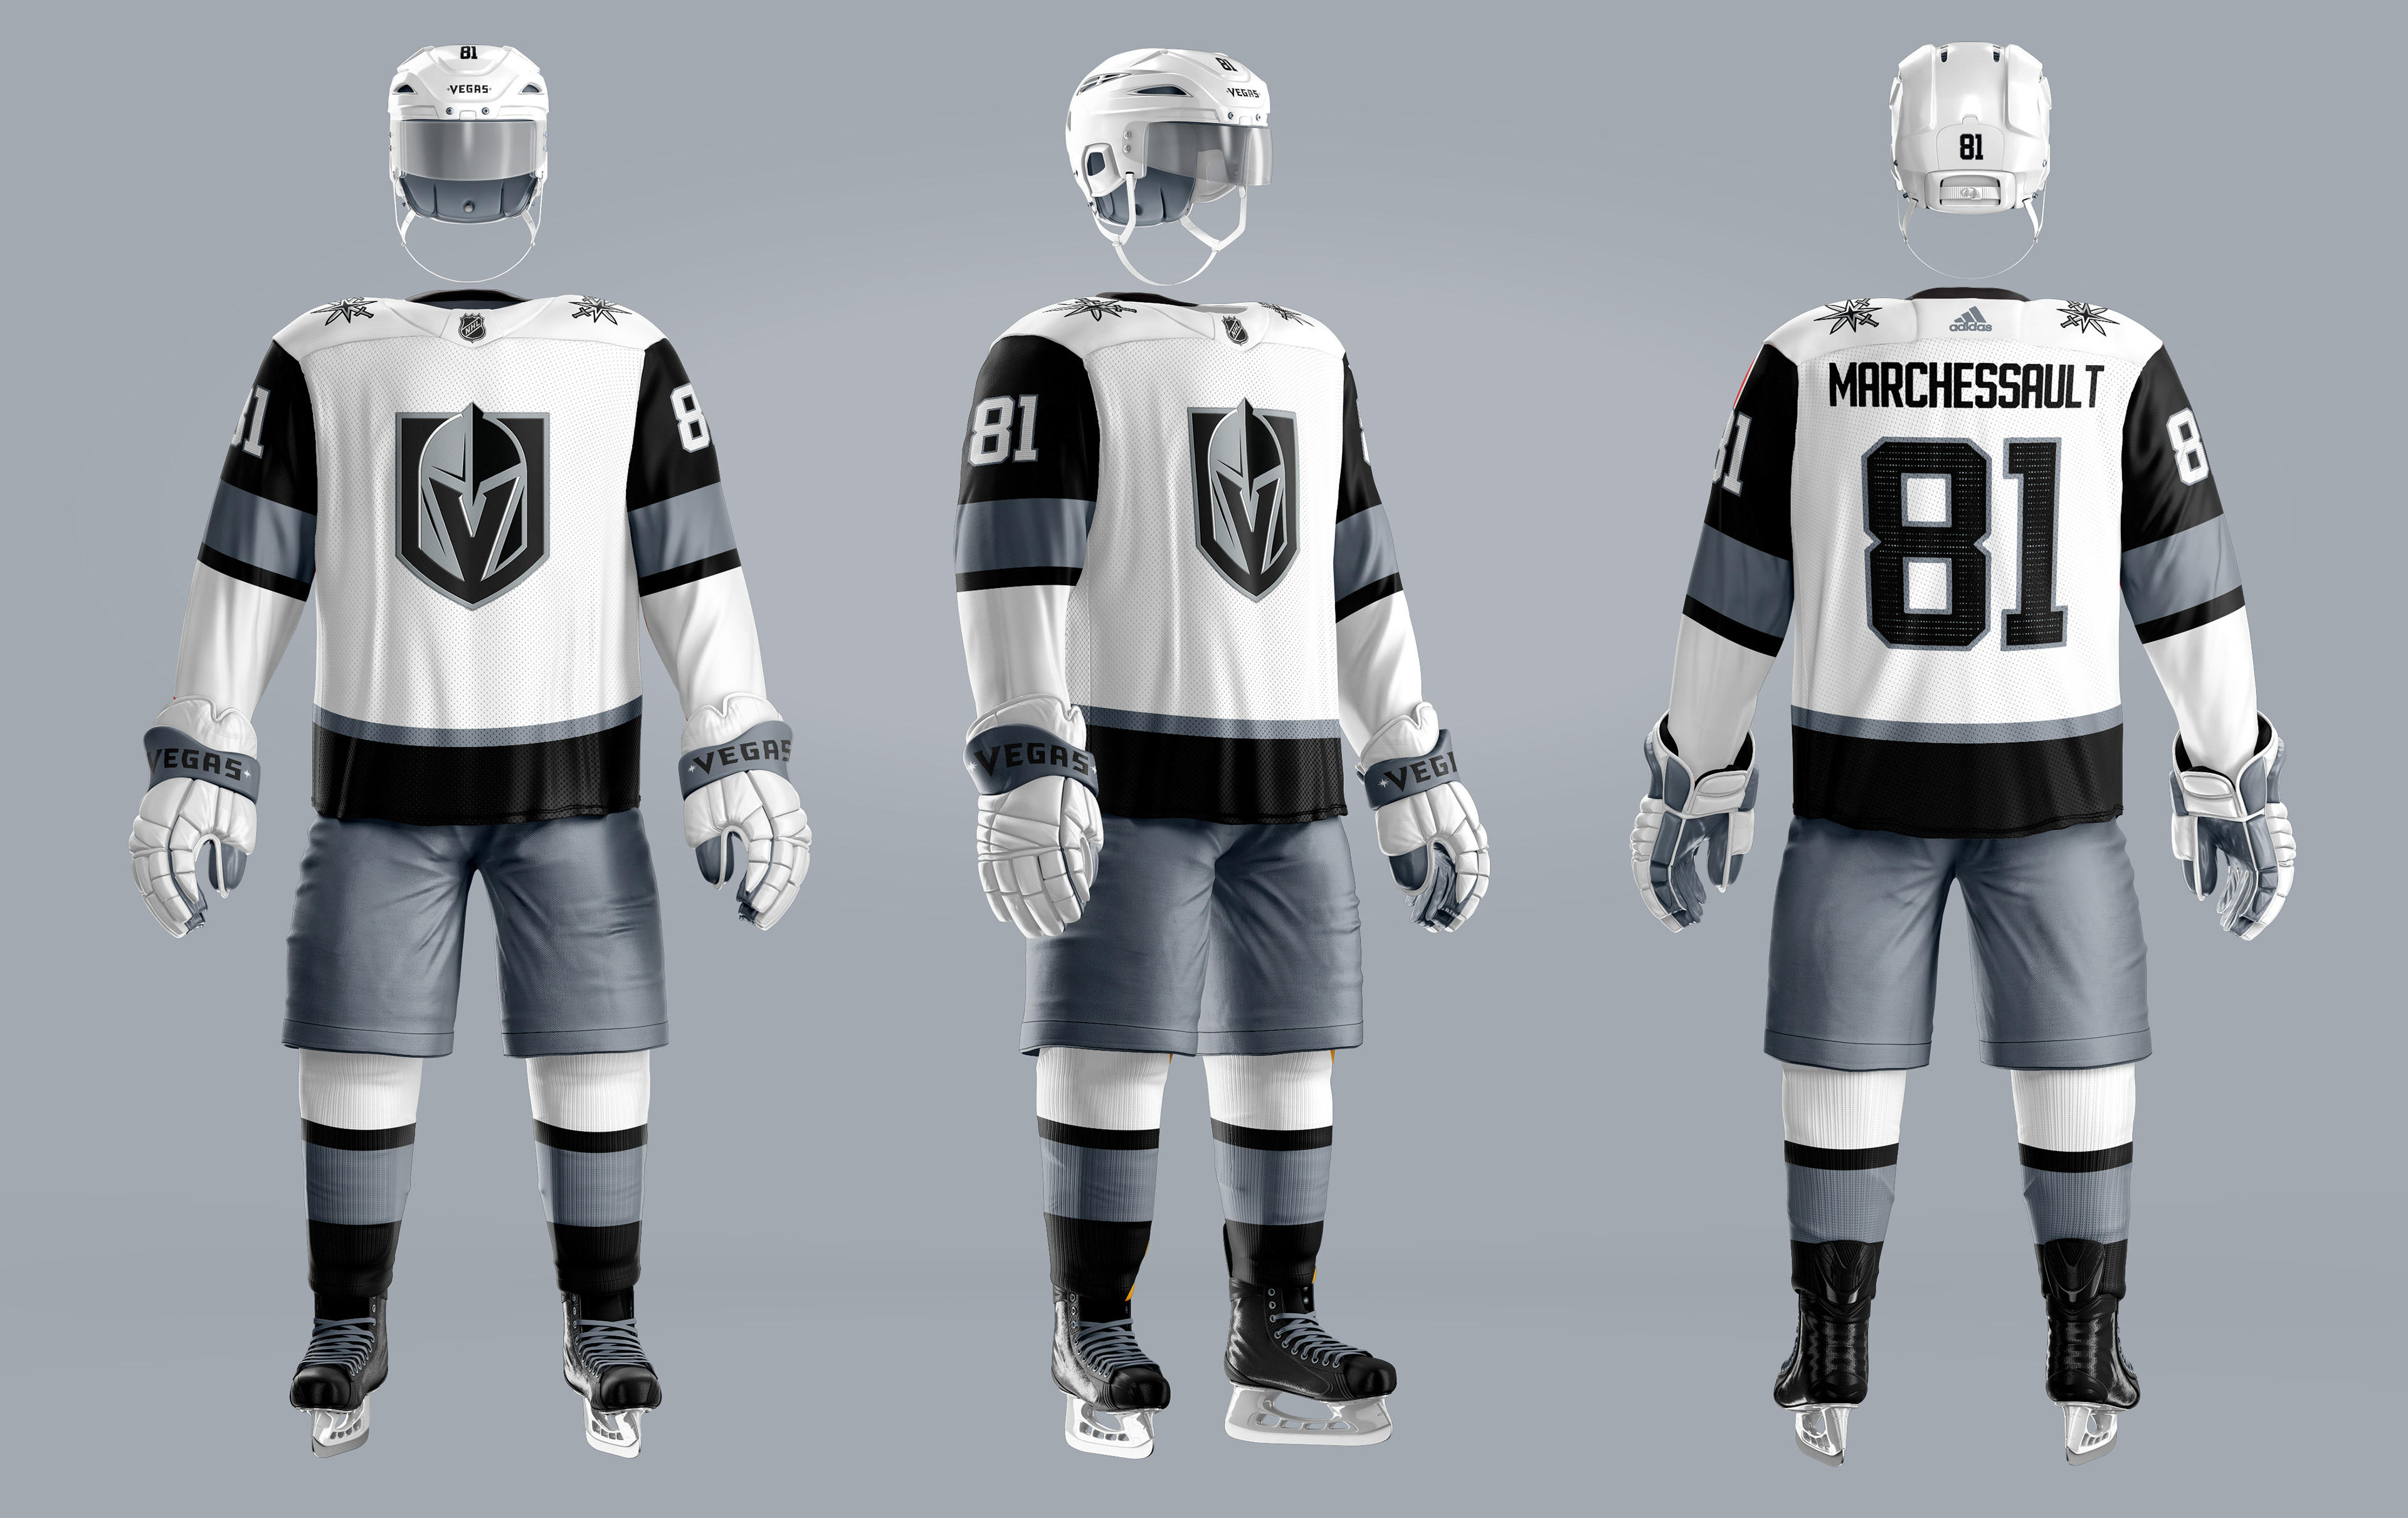 NHL Uniform Concepts - FINAL WORDS - Page 3 - Concepts - Chris